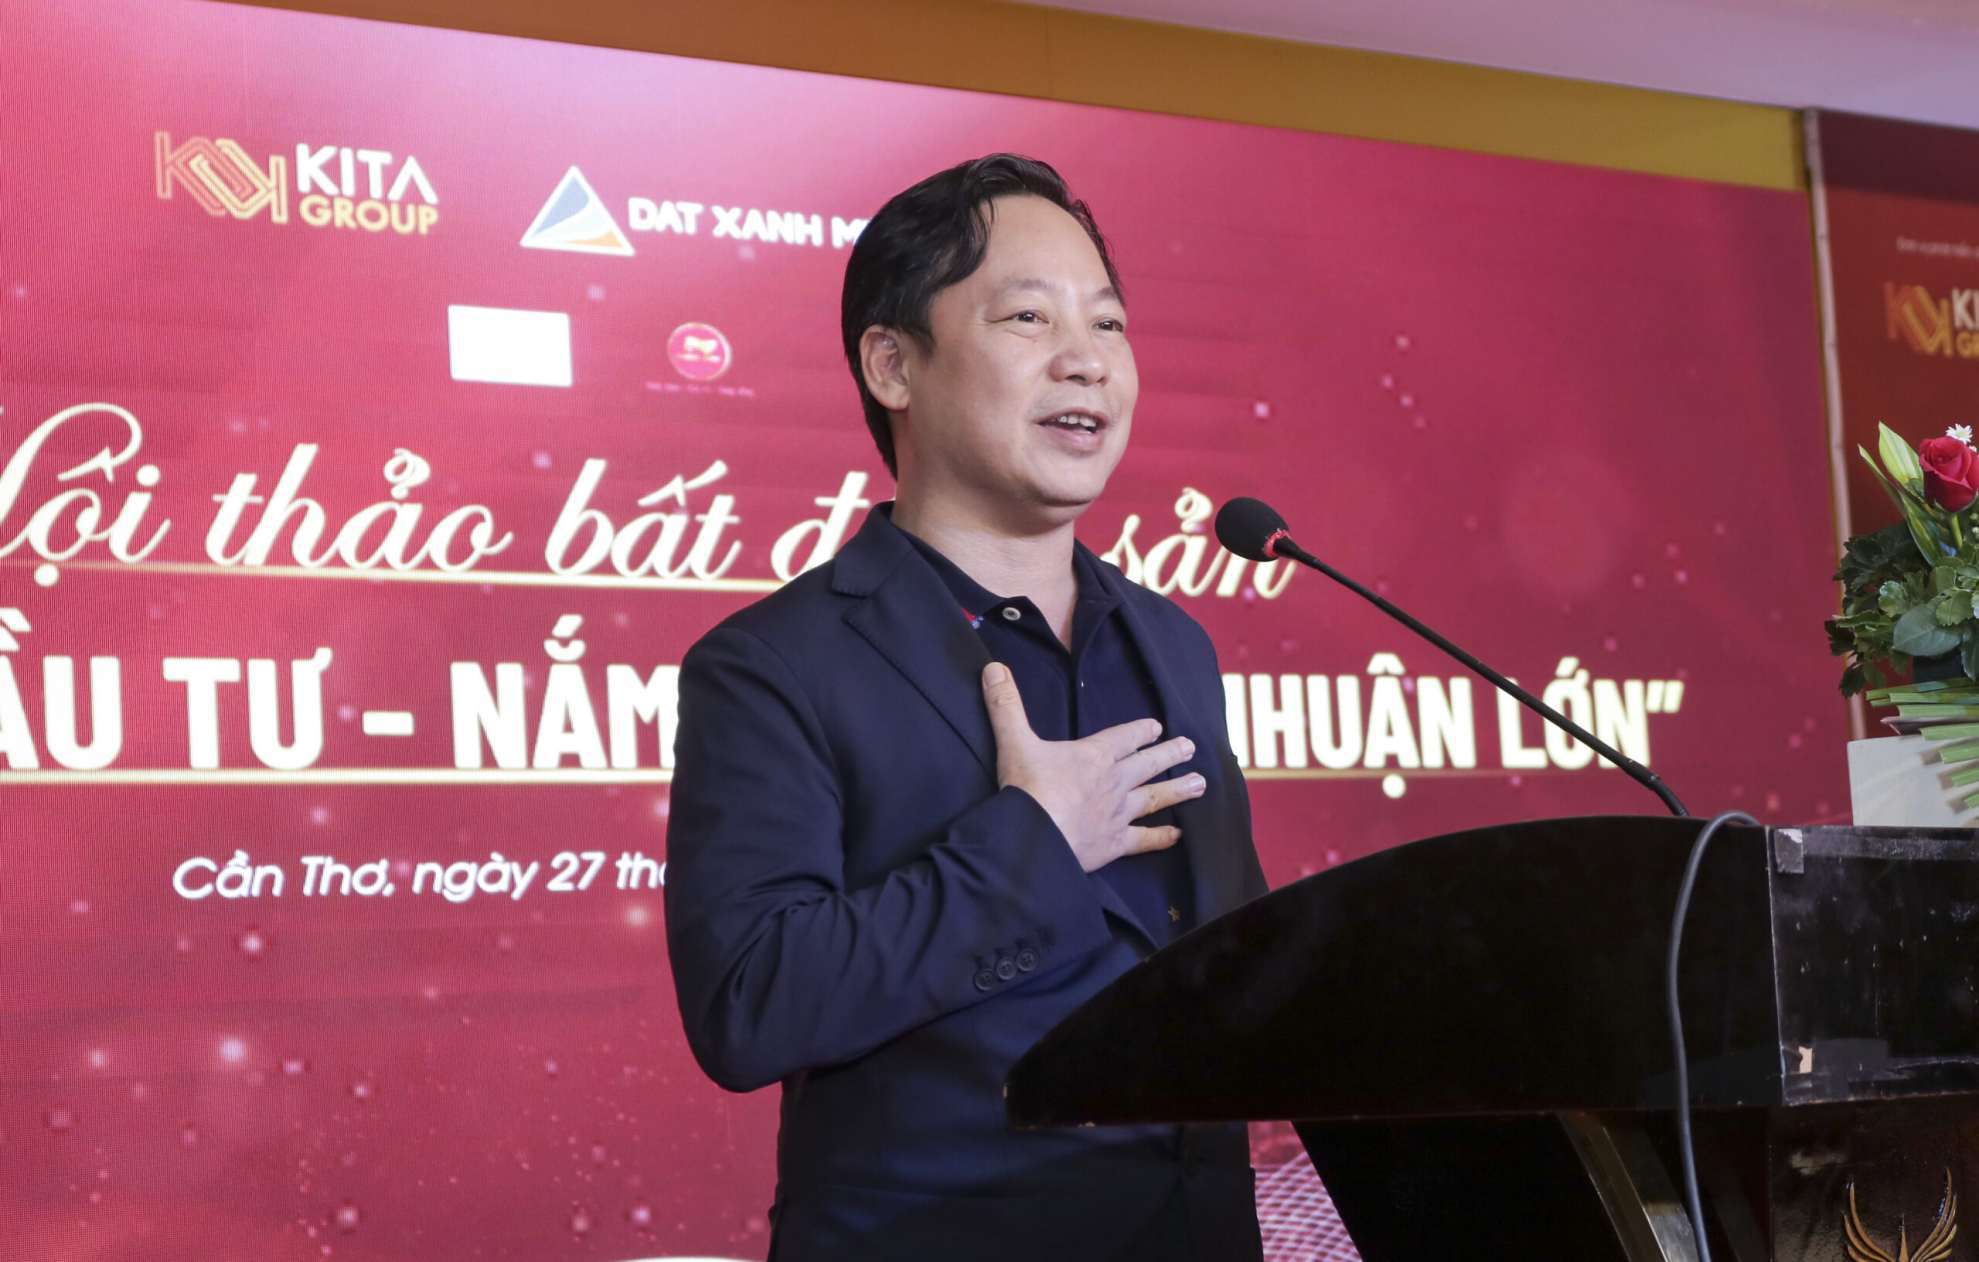 Chủ tịch KITA Group ông Nguyễn Duy Kiên